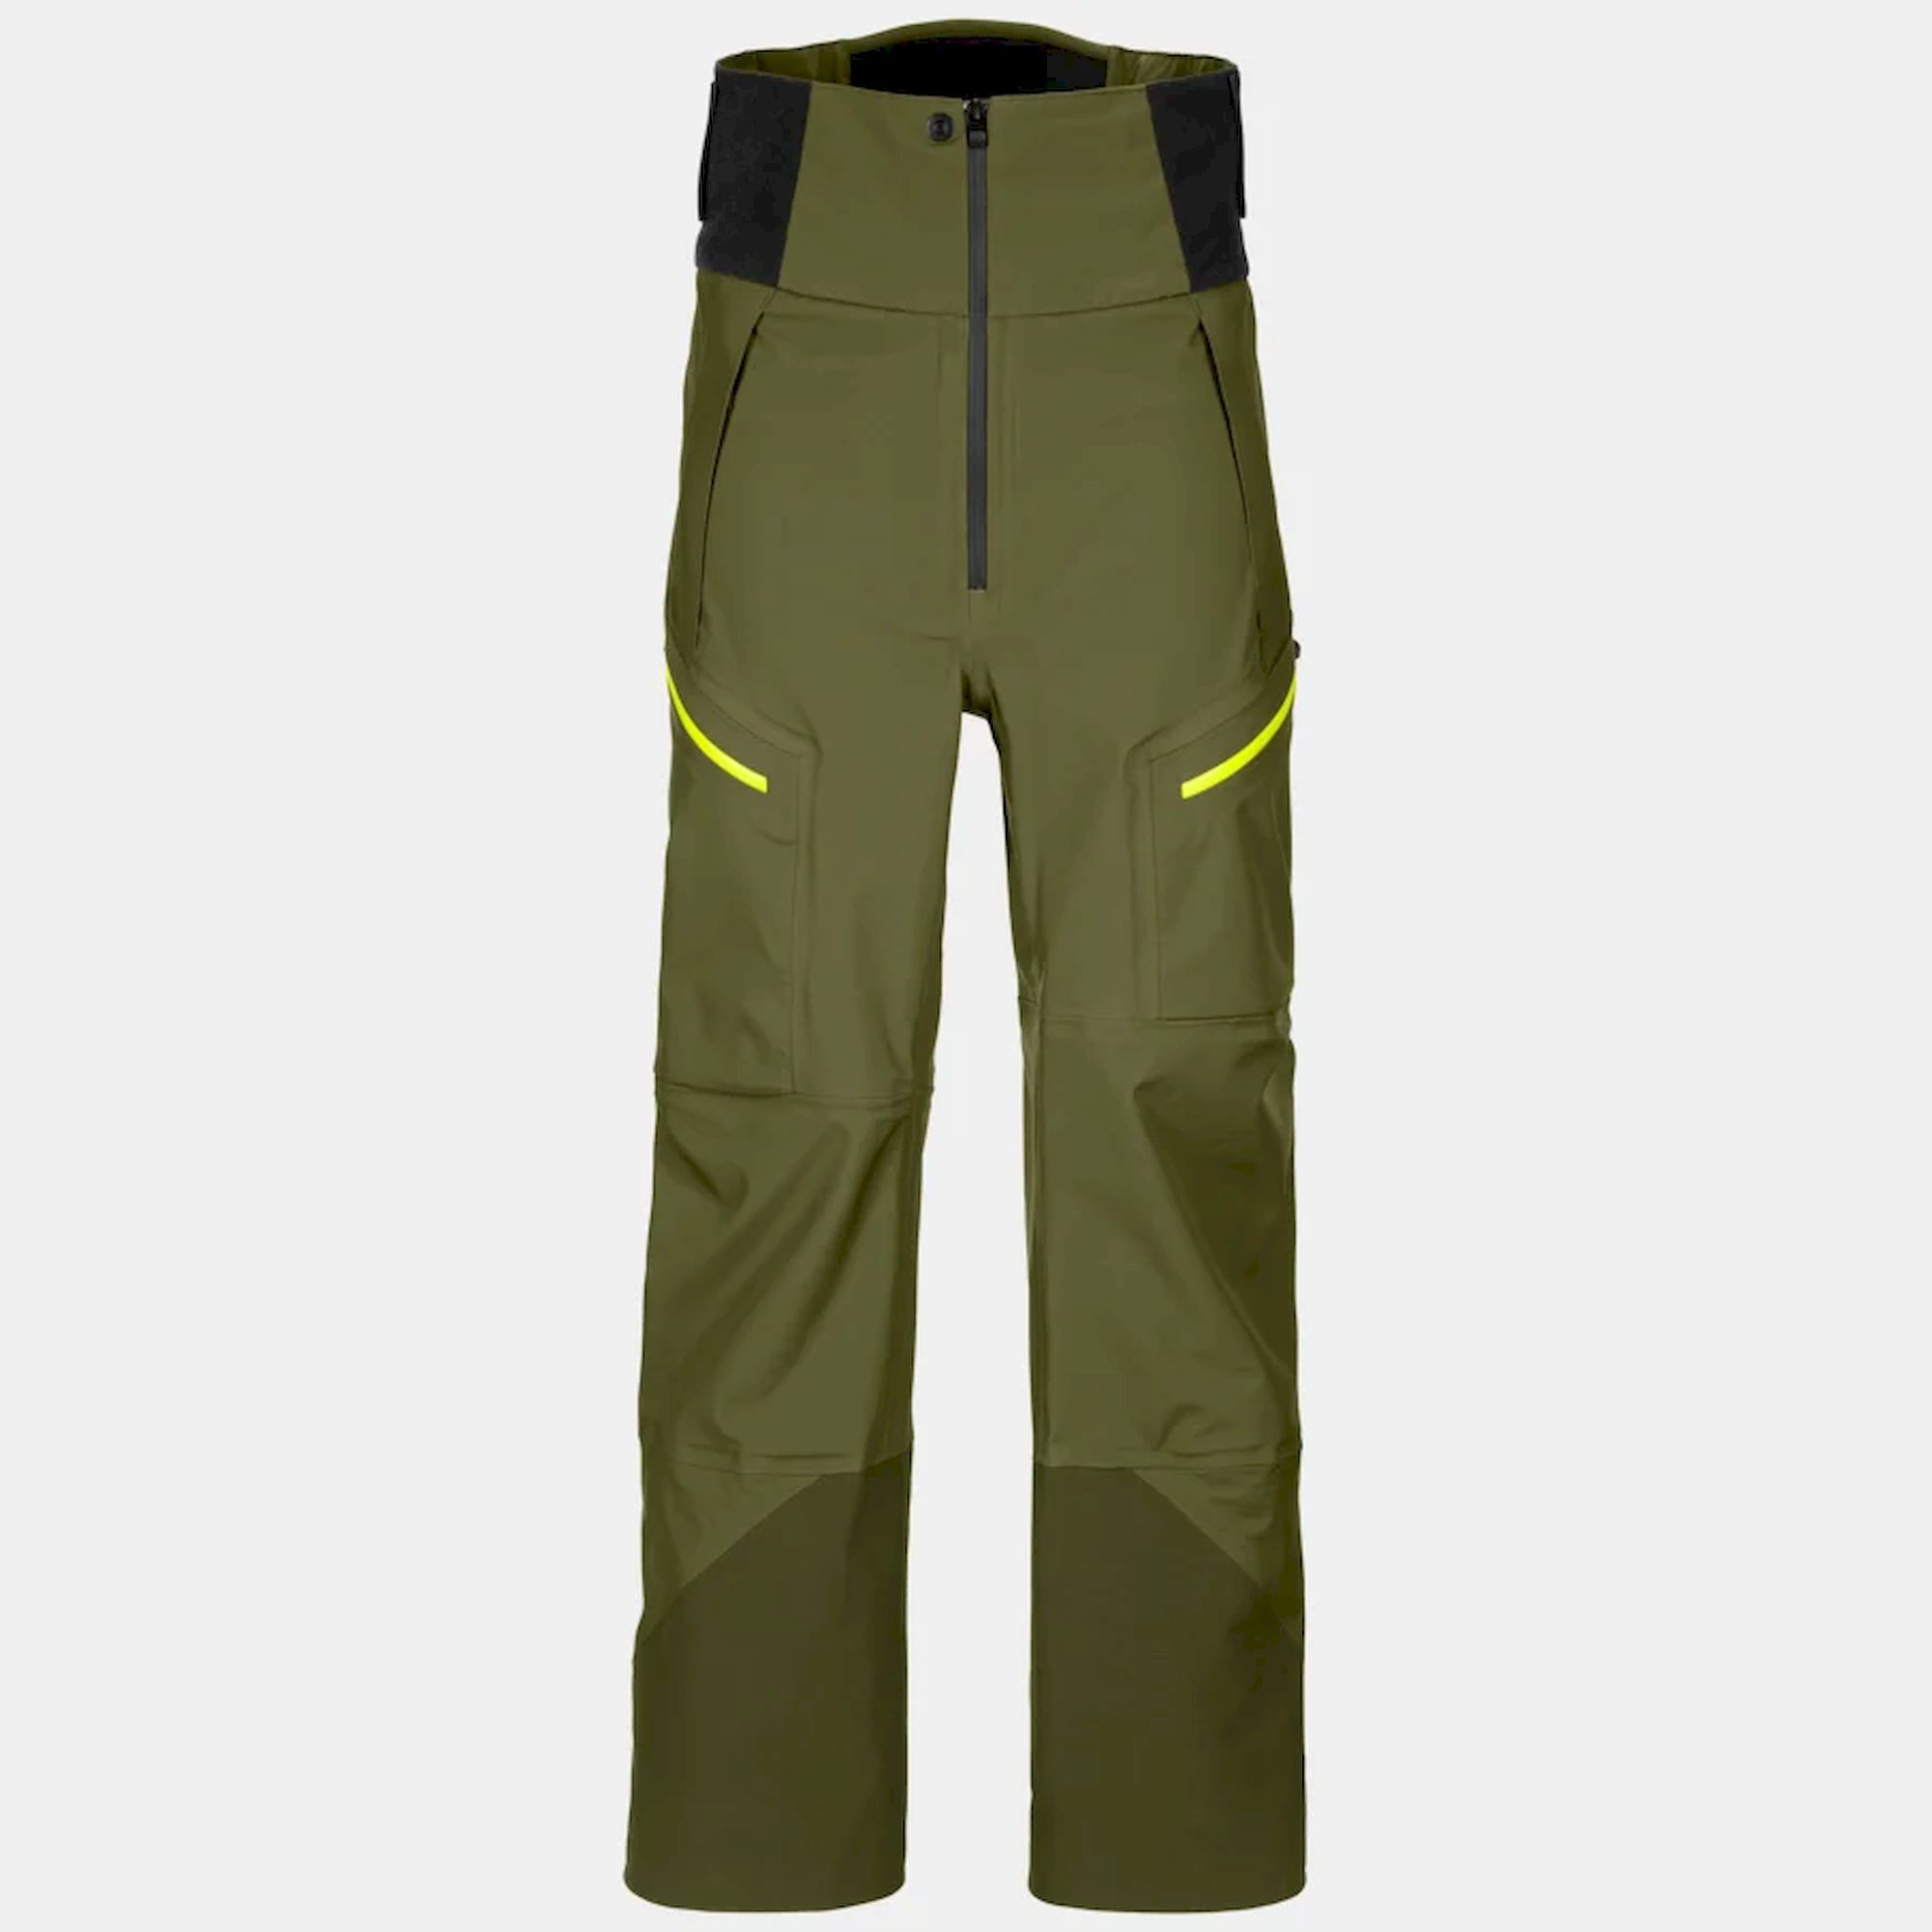 Ortovox 3L Guardian Shell Pants - Pantalón de esquí - Hombre